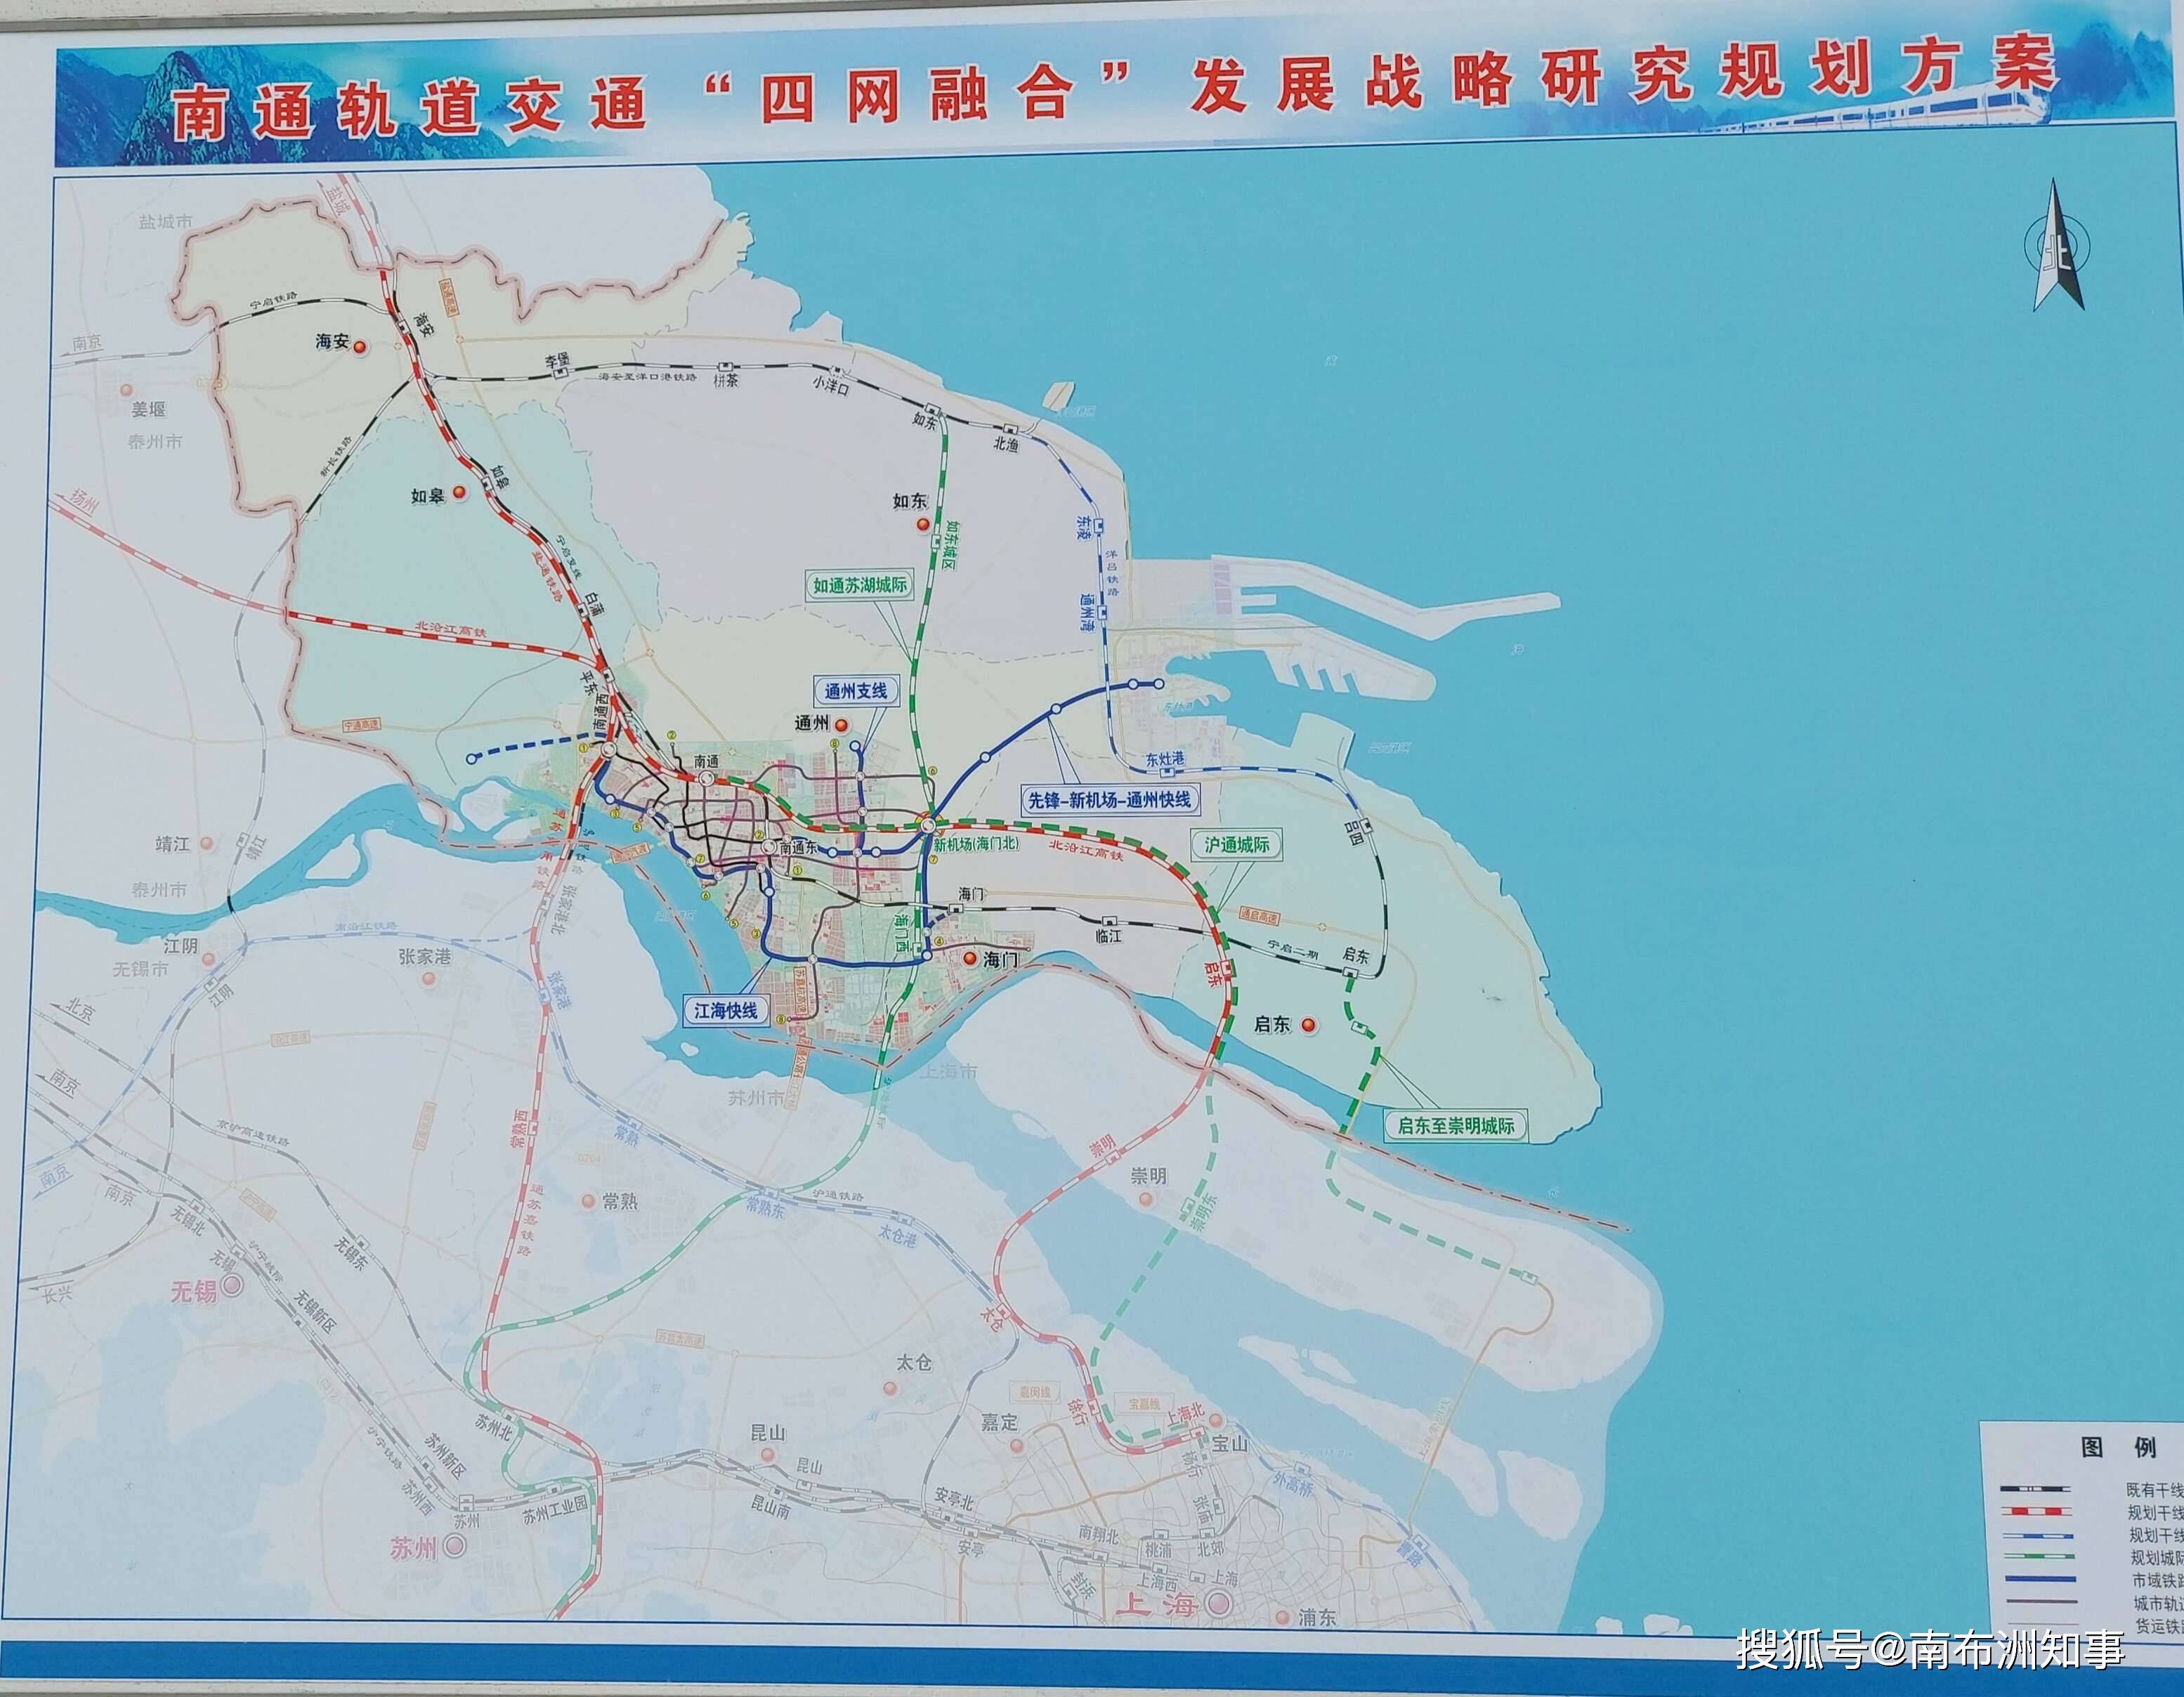 网络流出的机场平面效果图和南通新机场二甲场址范围示意图相互印证.